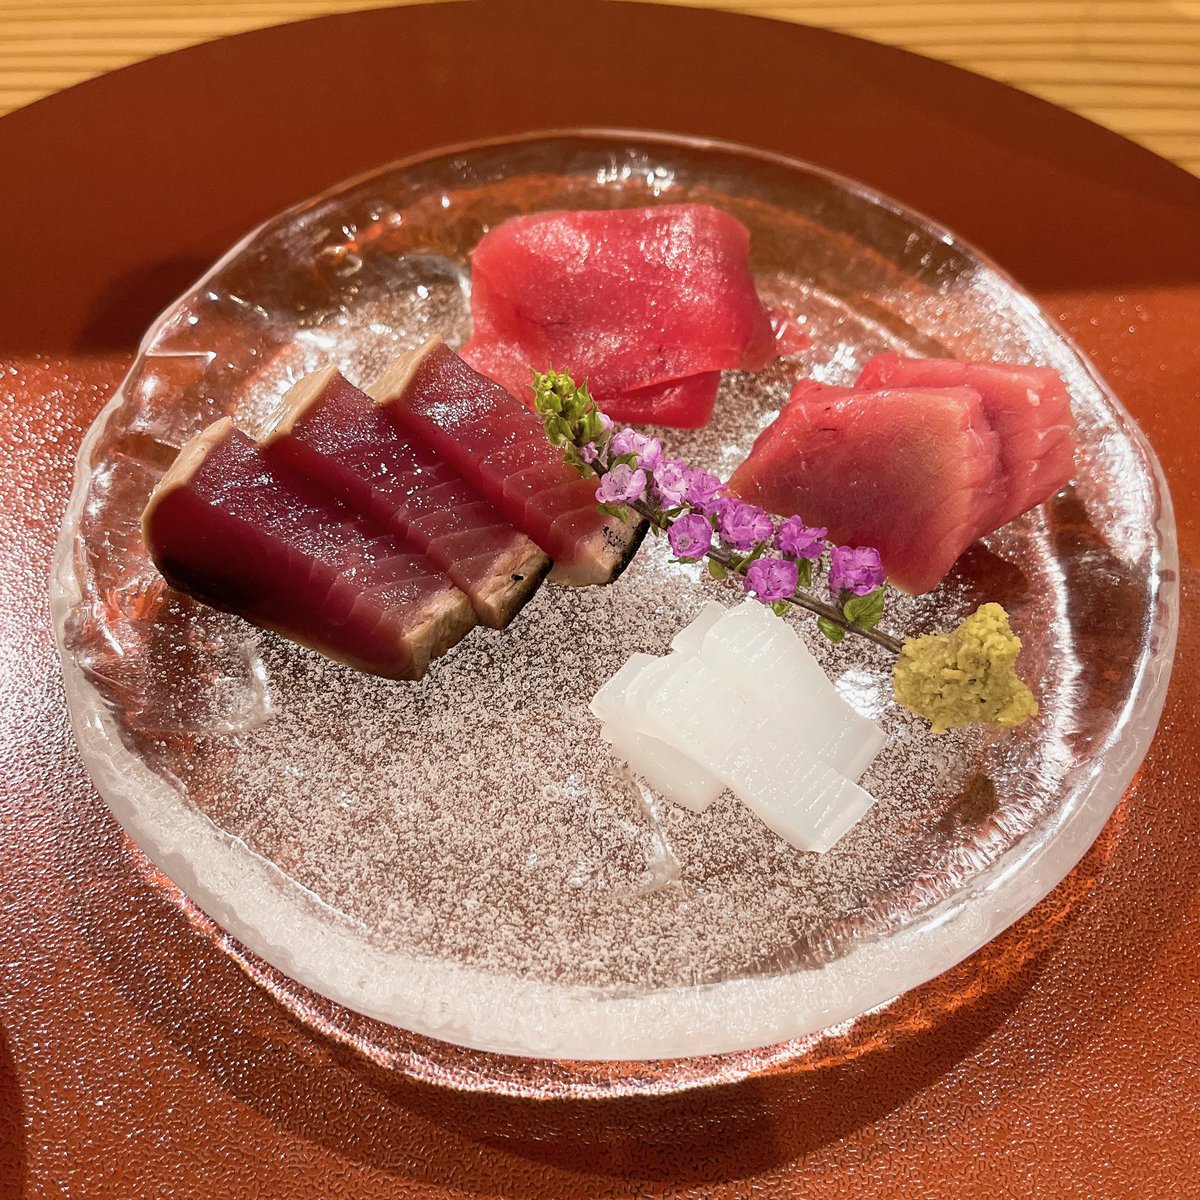 アメブロを投稿しました。 『ひとしずく@奈良』 奈良の美味しいオススメのお店です😋❣️ リサーチしてくれた弟に感謝🥰 ご馳走さまでした✨✨ 🔗https://t.co/Bh8ZwnQCZT @ameba_official